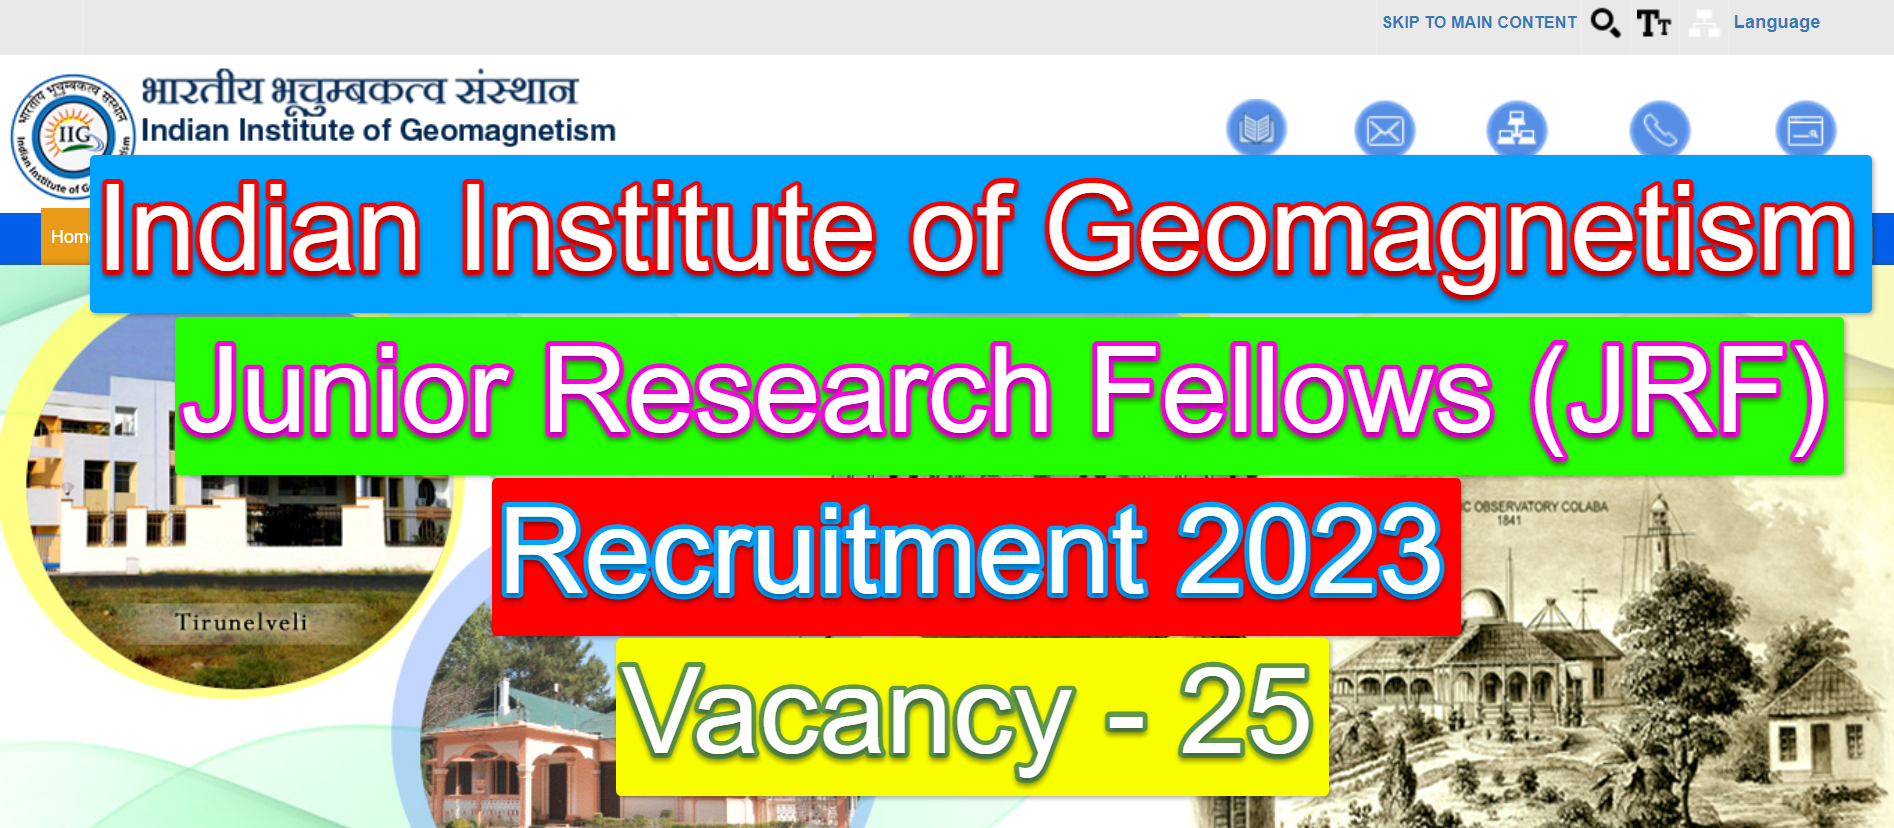 IIG Recruitment 2023 - JRF Posts